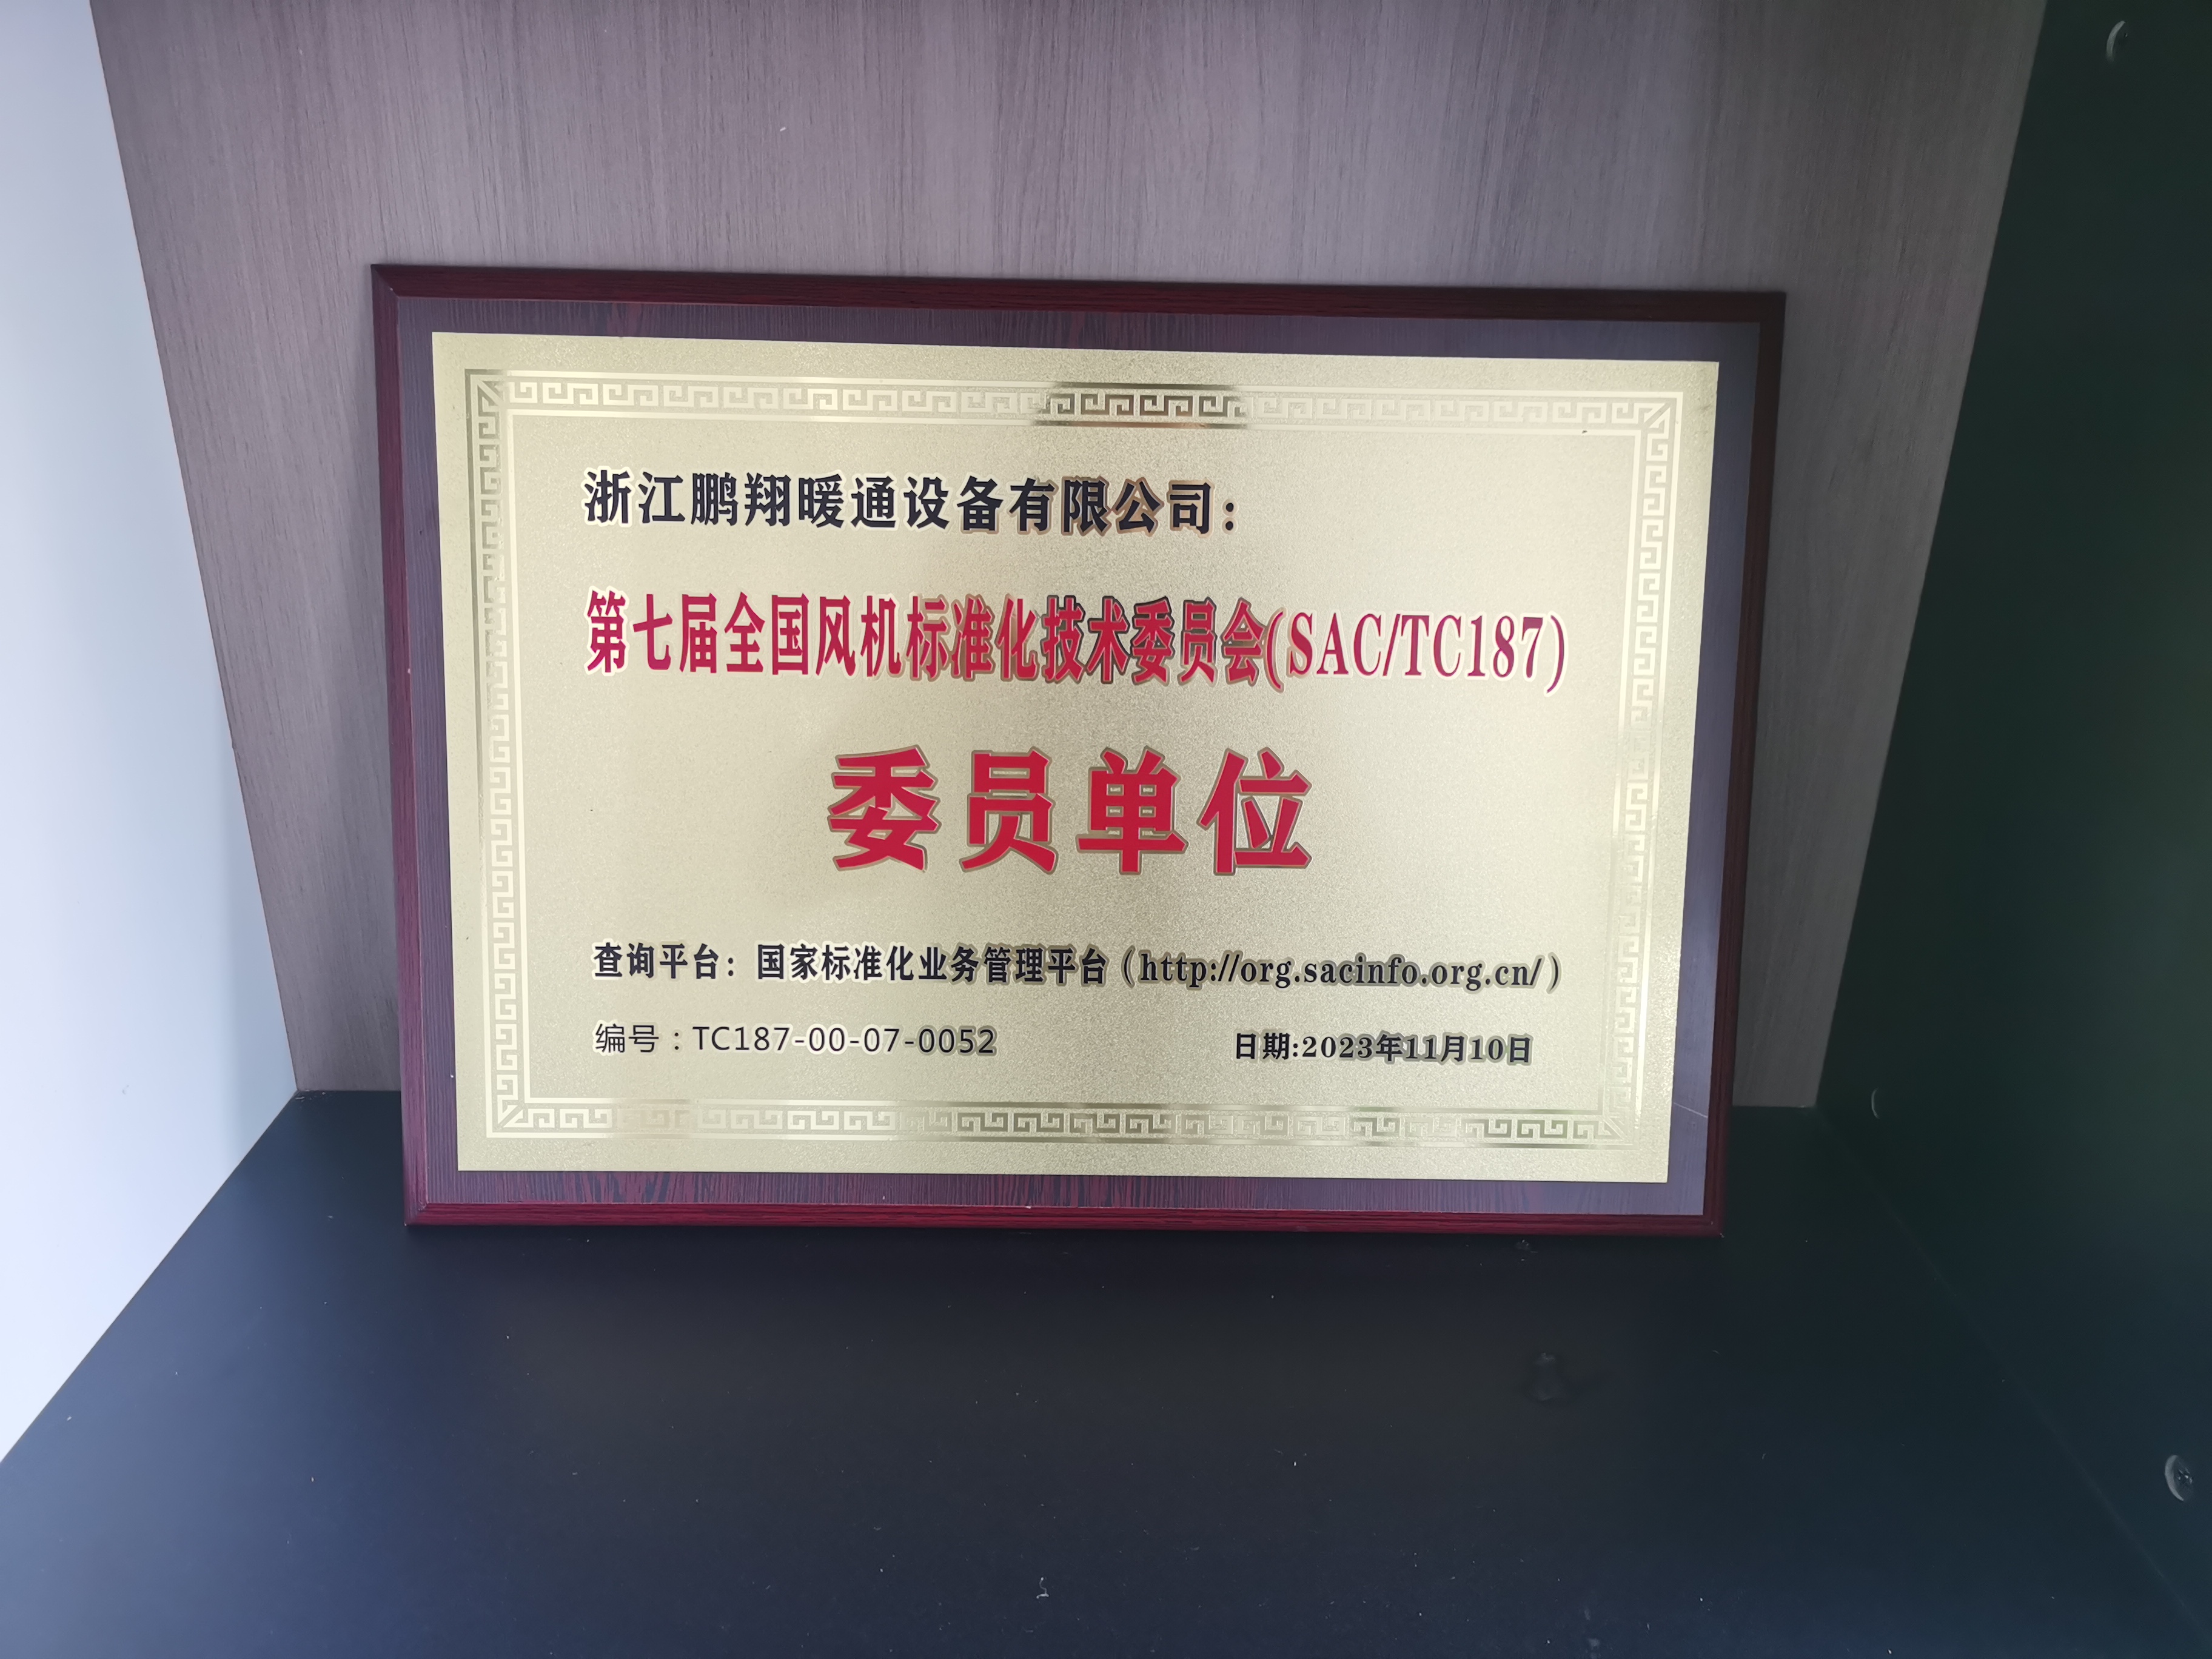 ВАЛМЕТ Технолошки тим за машине за папир дао је највишу оцену компанији Зхејианг Пенгкианг ХВАЦ Екуипмент Цо., Лтд. током годишње ревизије